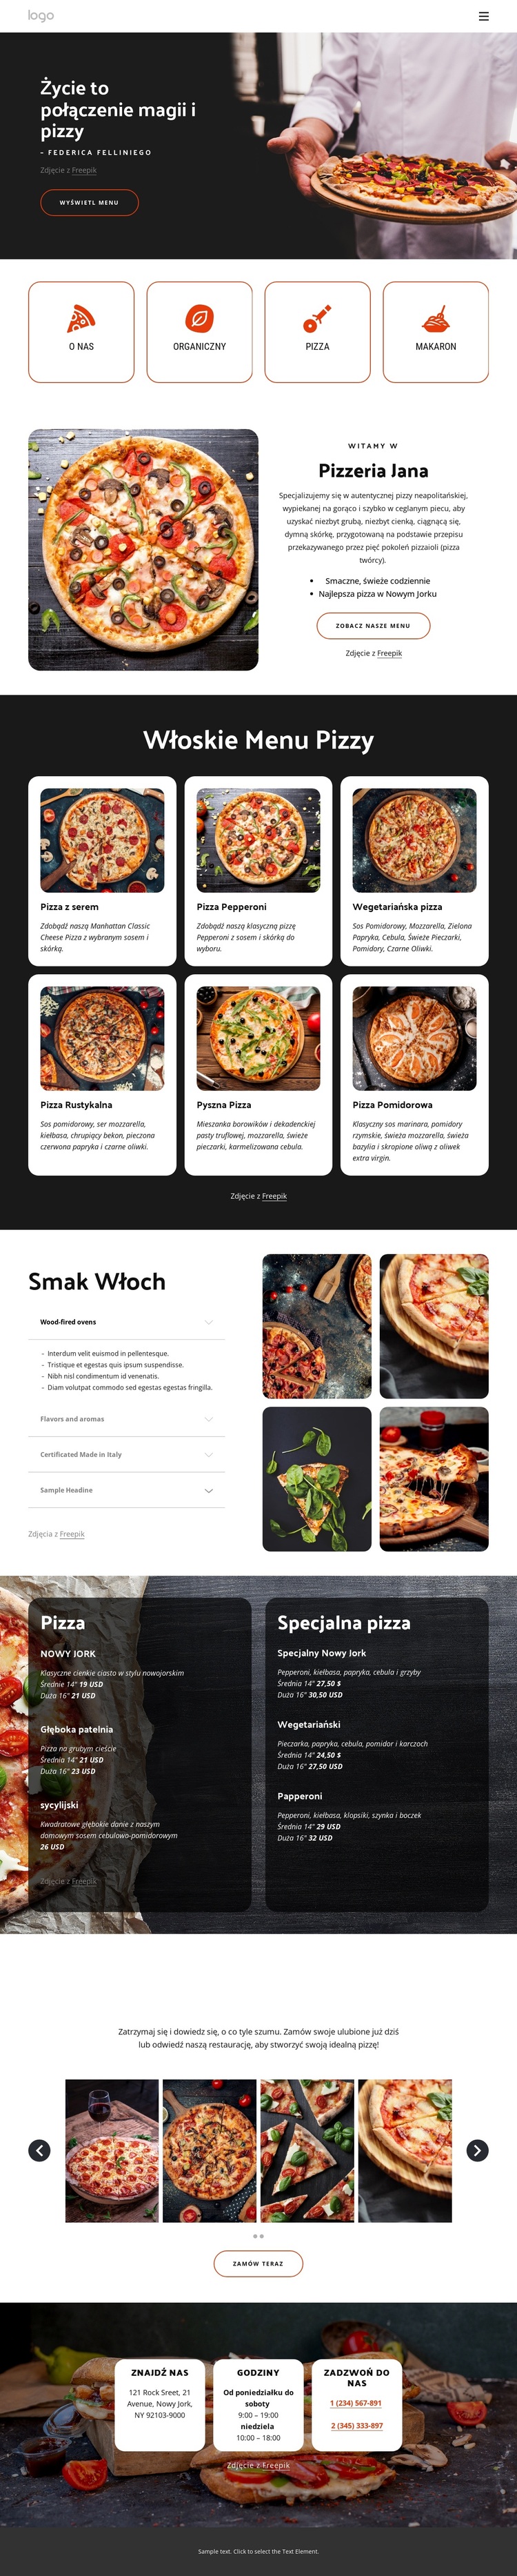 Pizzeria rodzinna Motyw WordPress